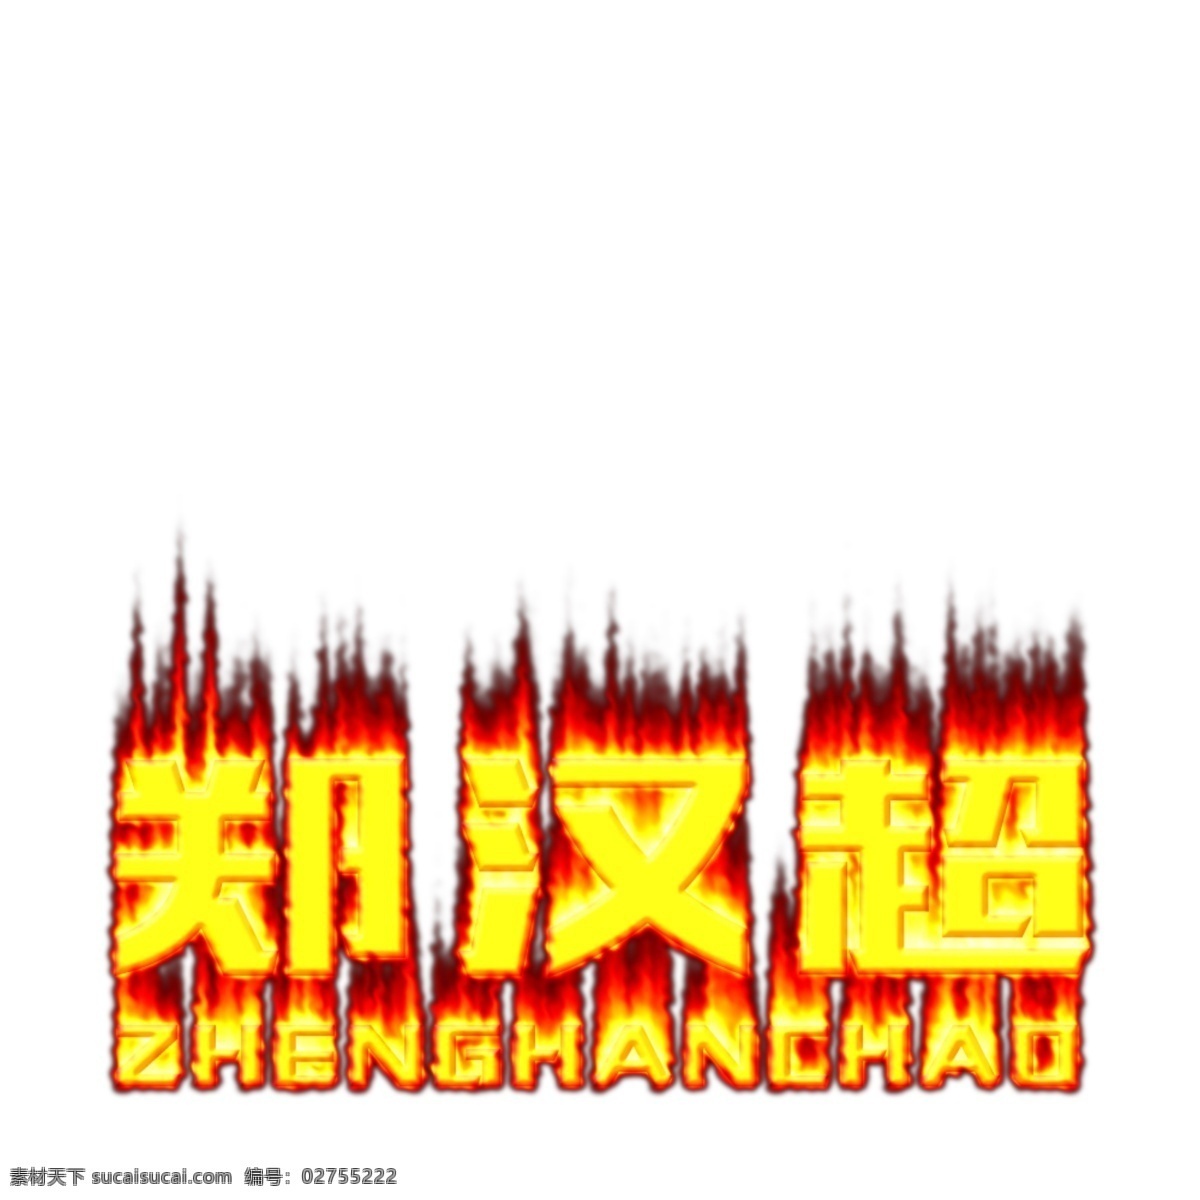 郑汉超 字体设计 火焰字体 黄色